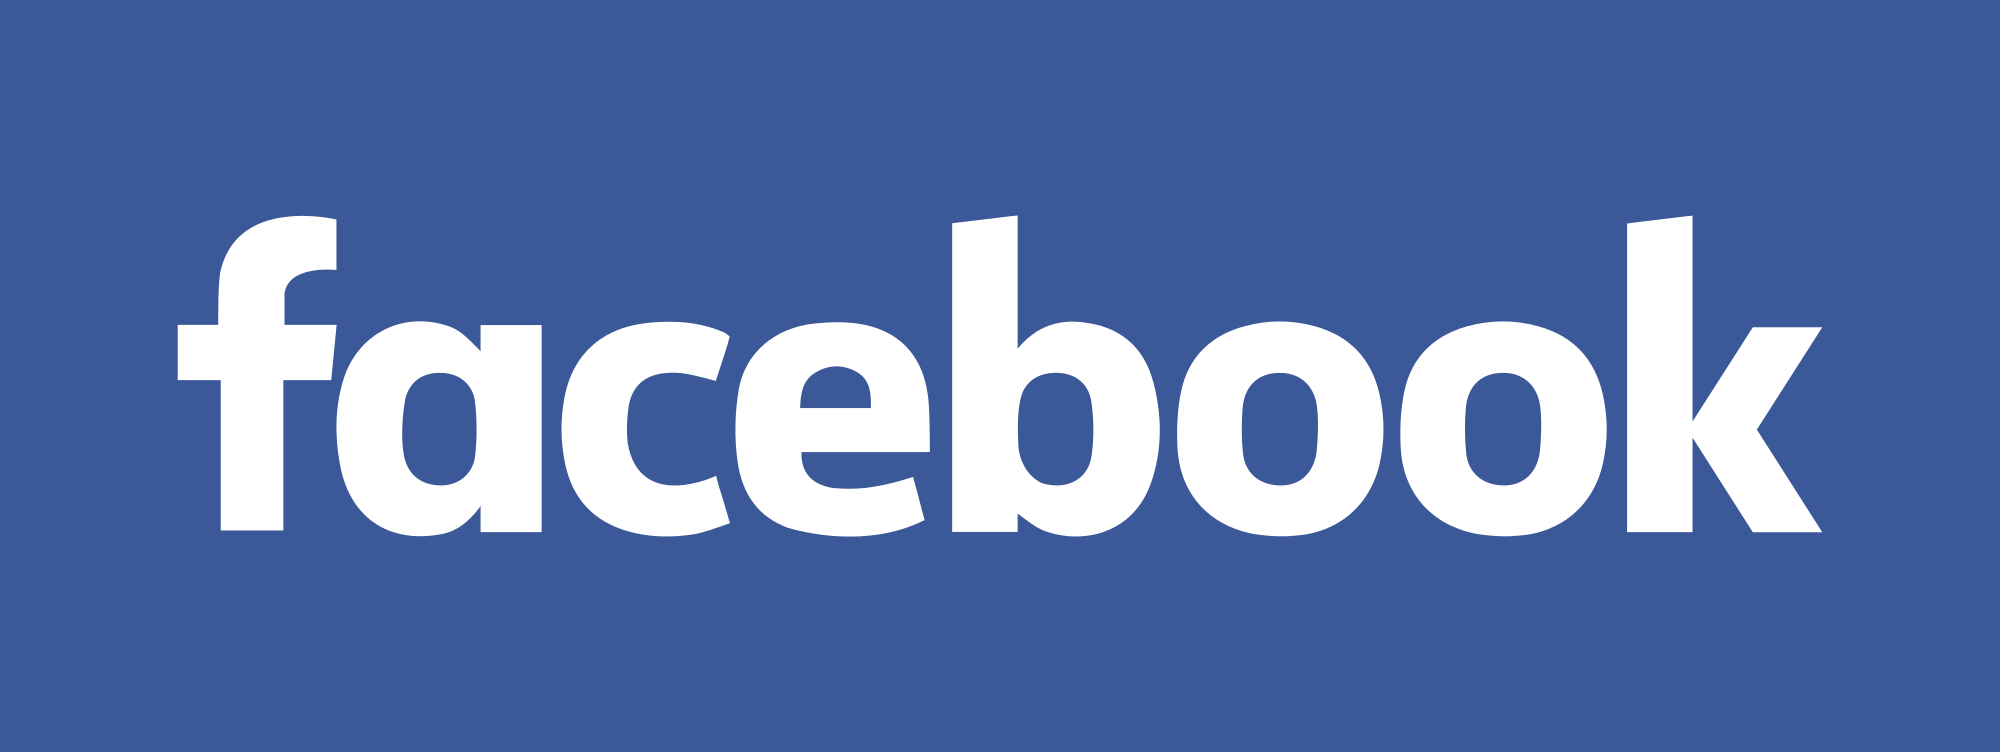 Follow Facebook